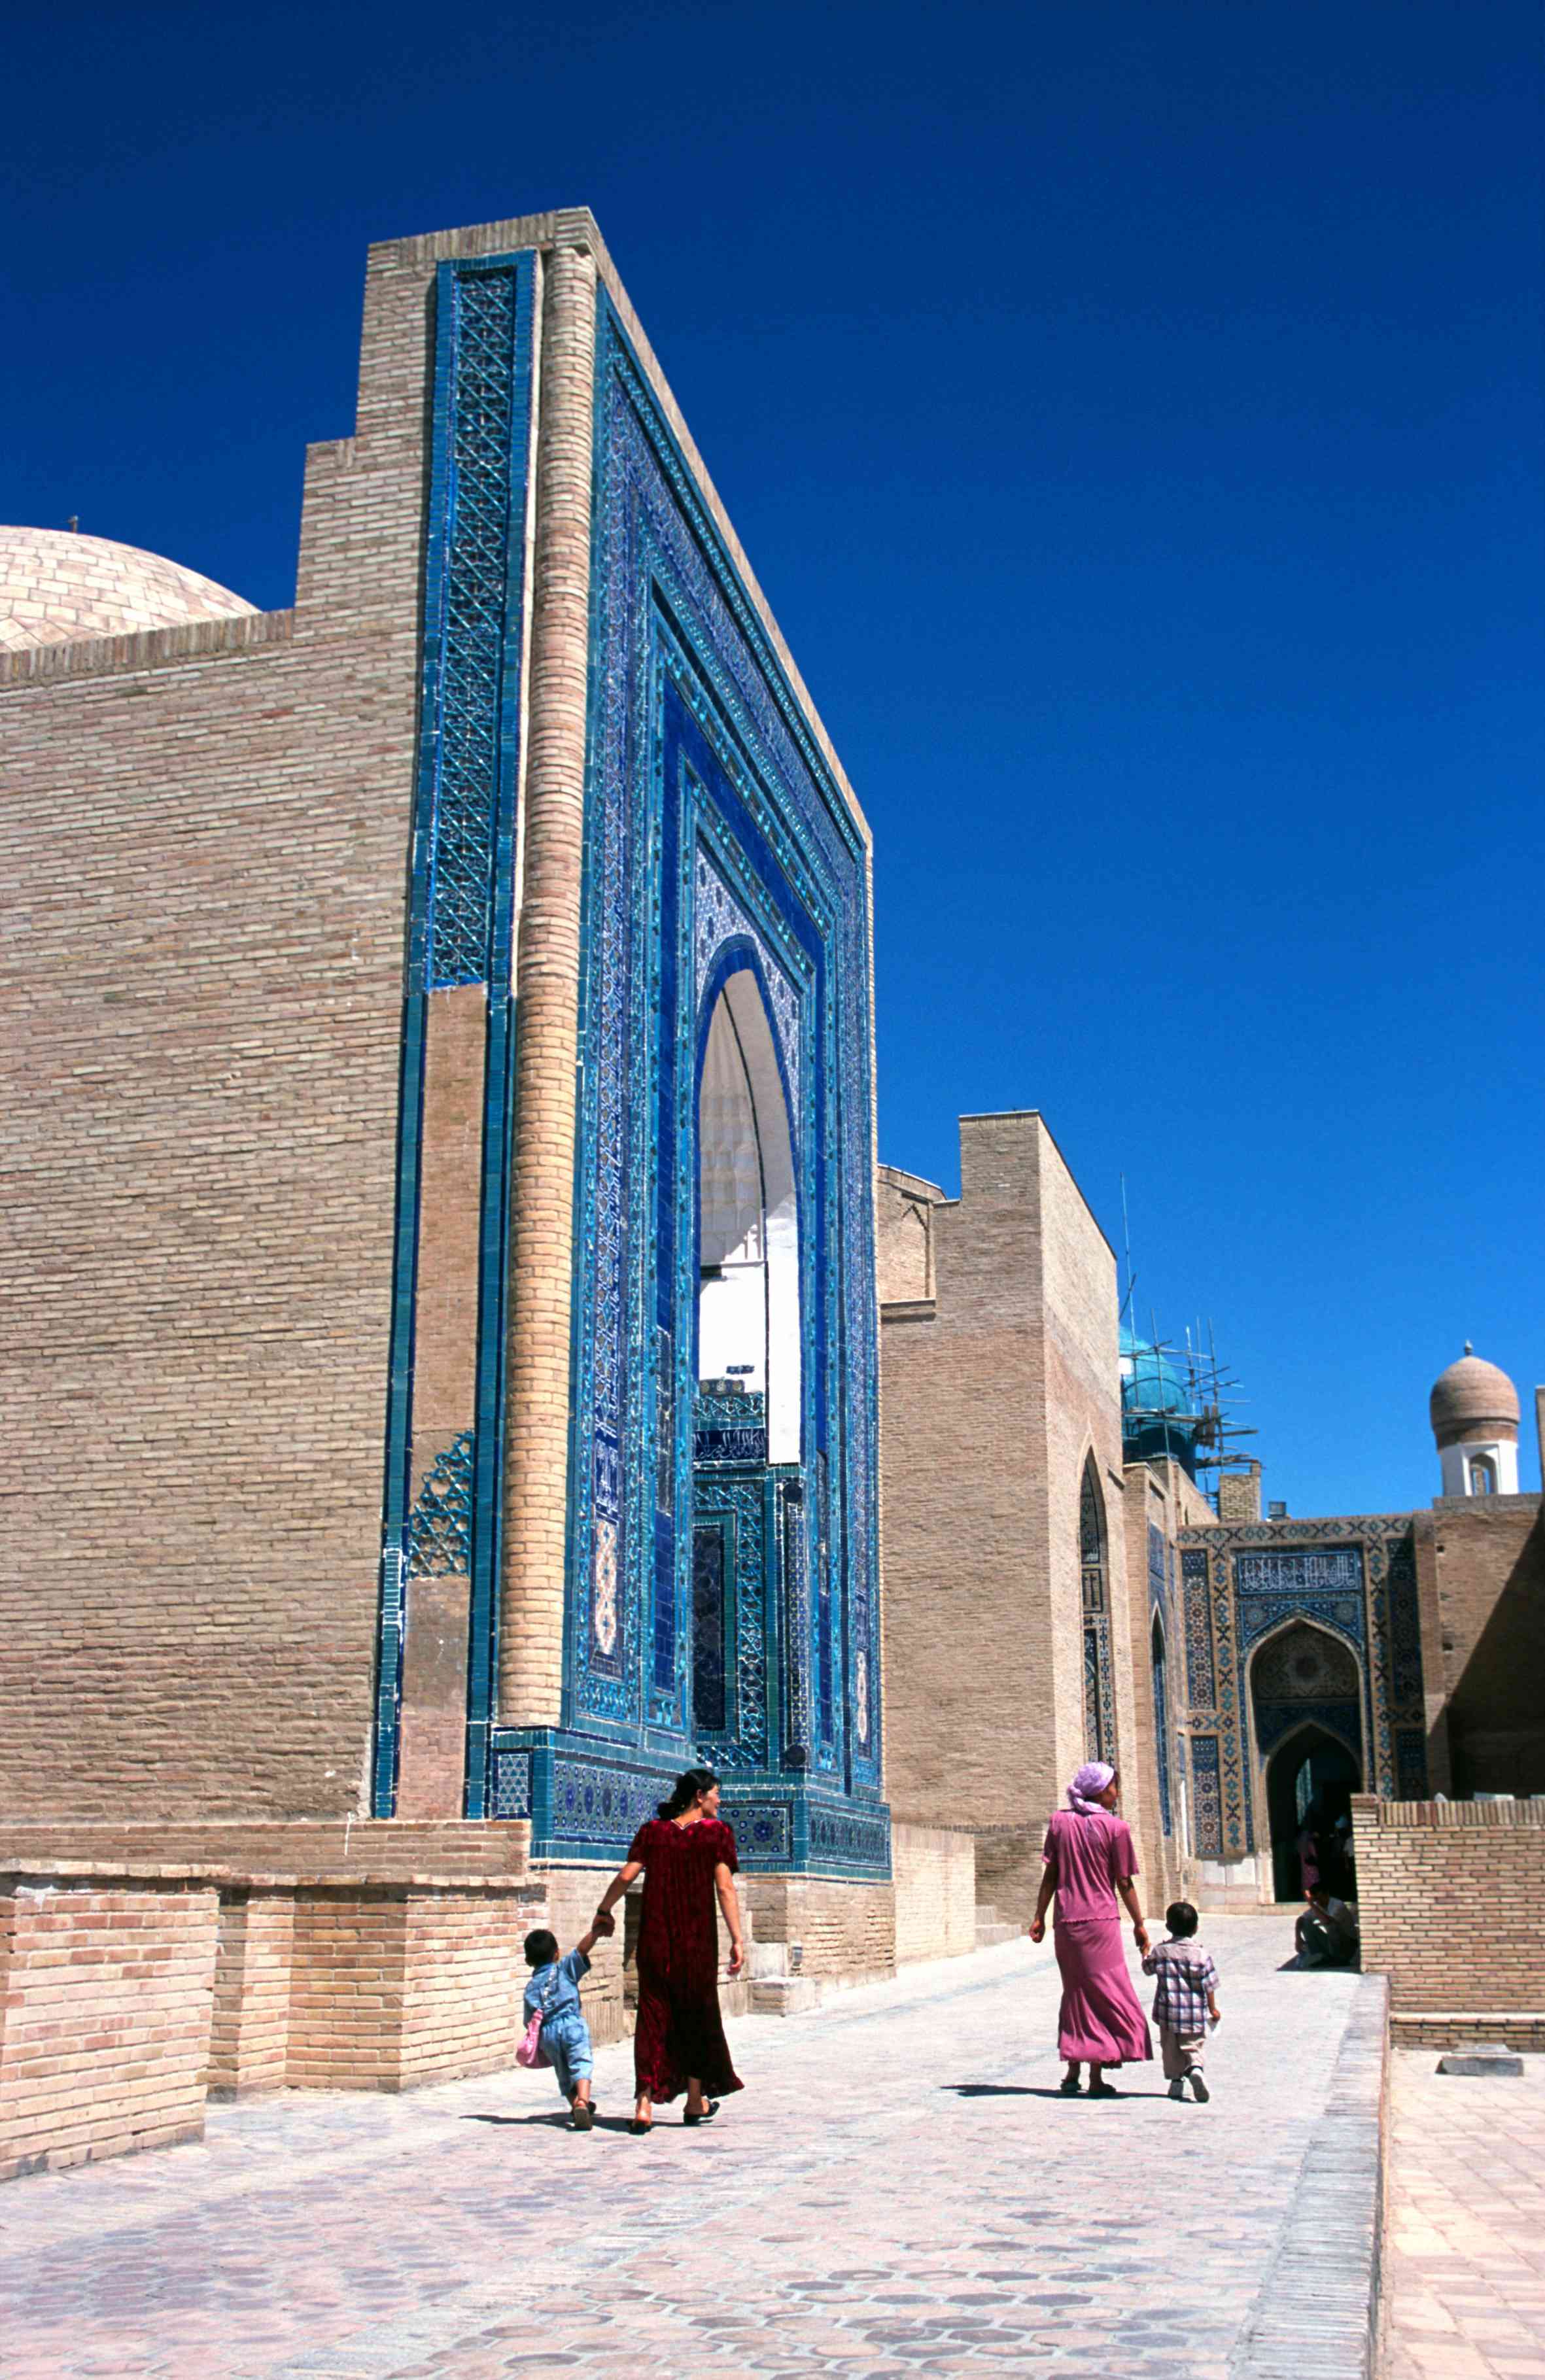 Devant le mausolée Ak Sarai de Samarkand.